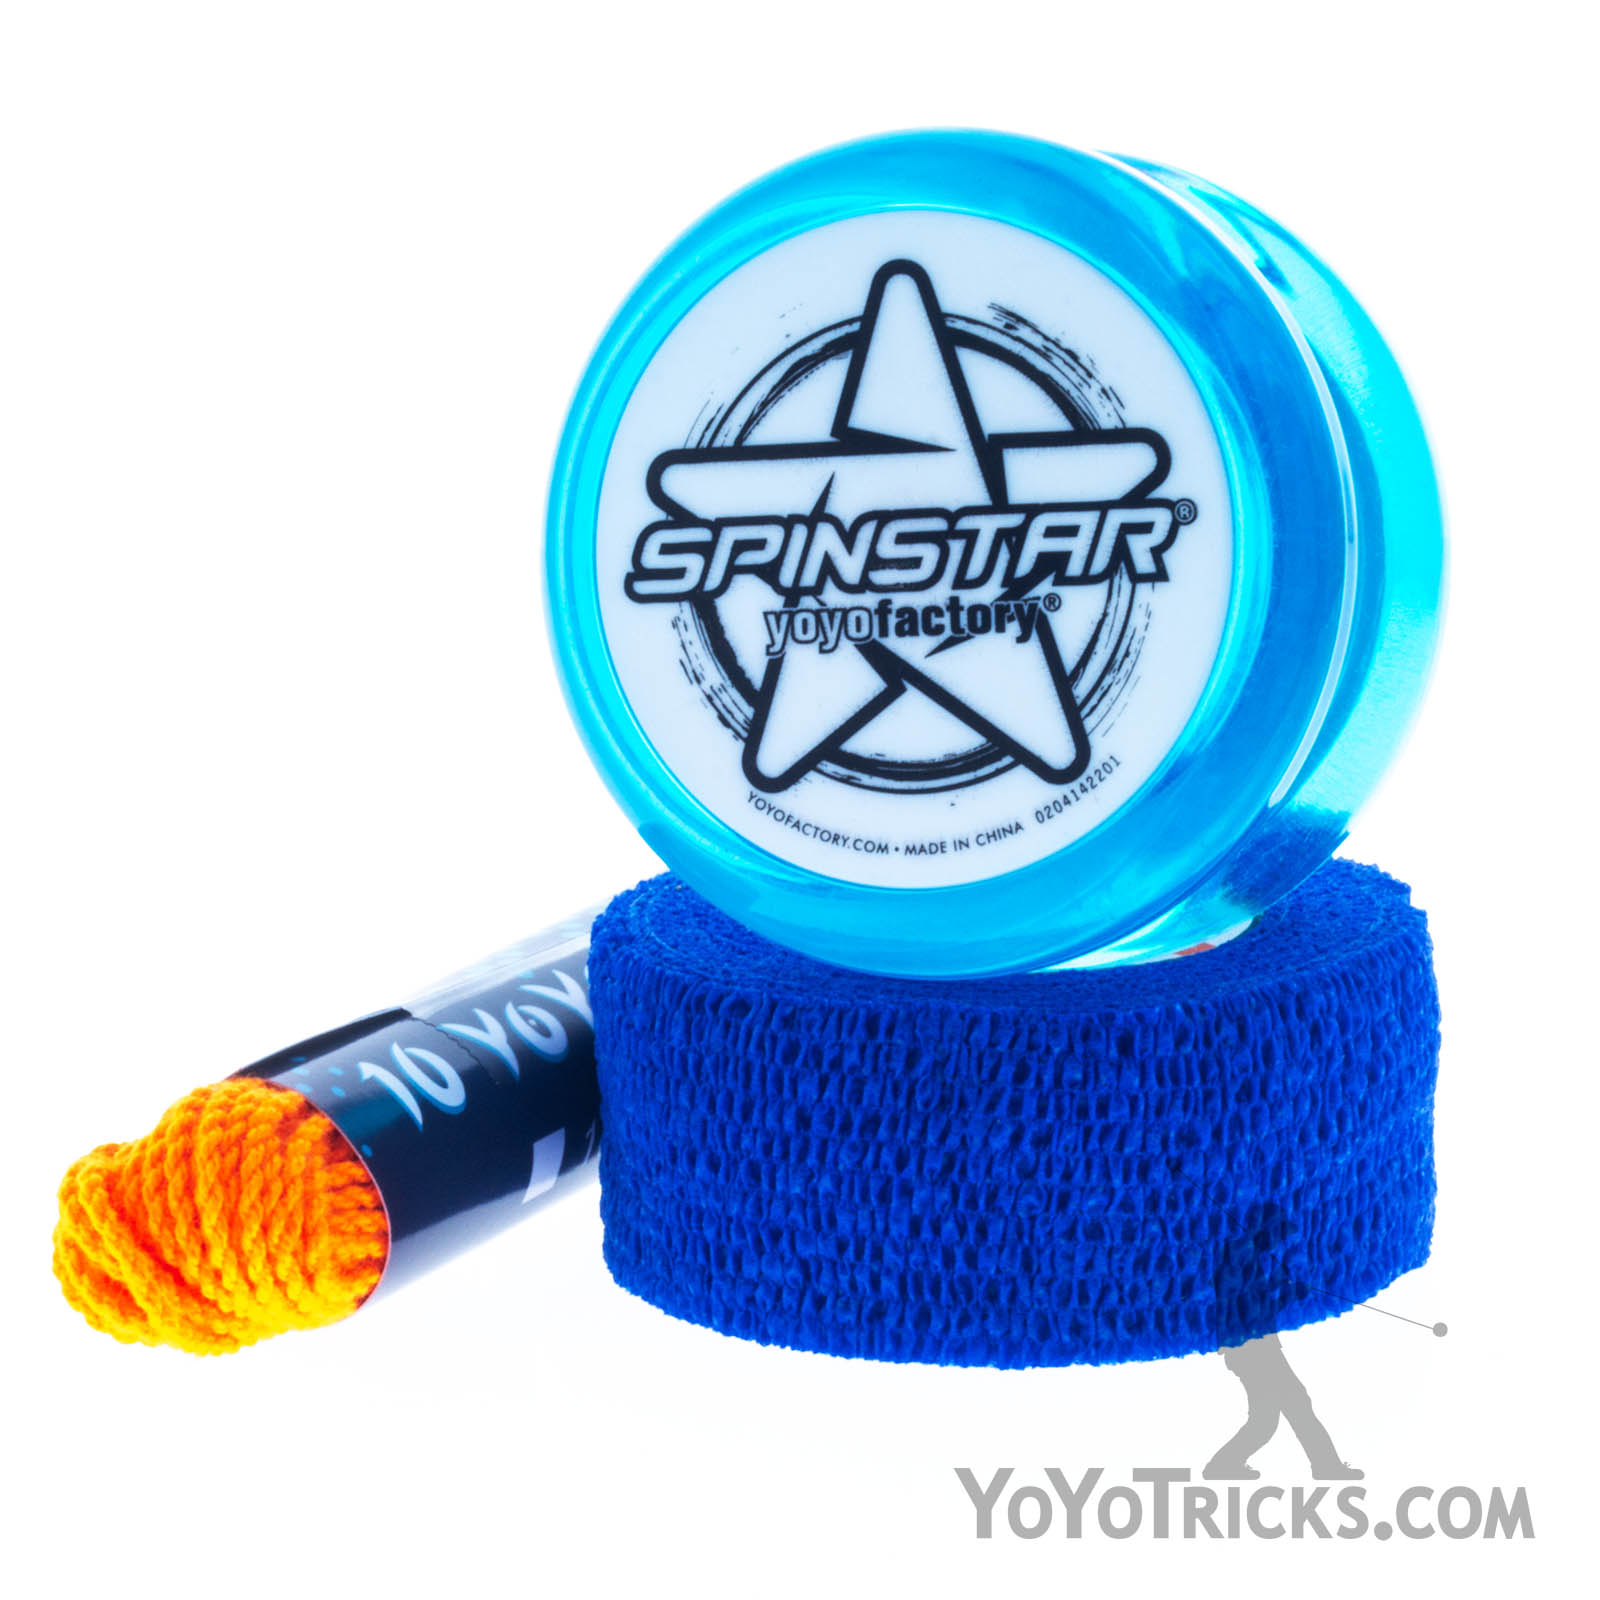 Spinstar Yoyo Starter Pack - YoYoFactory | Buy Now on YoYoTricks.com